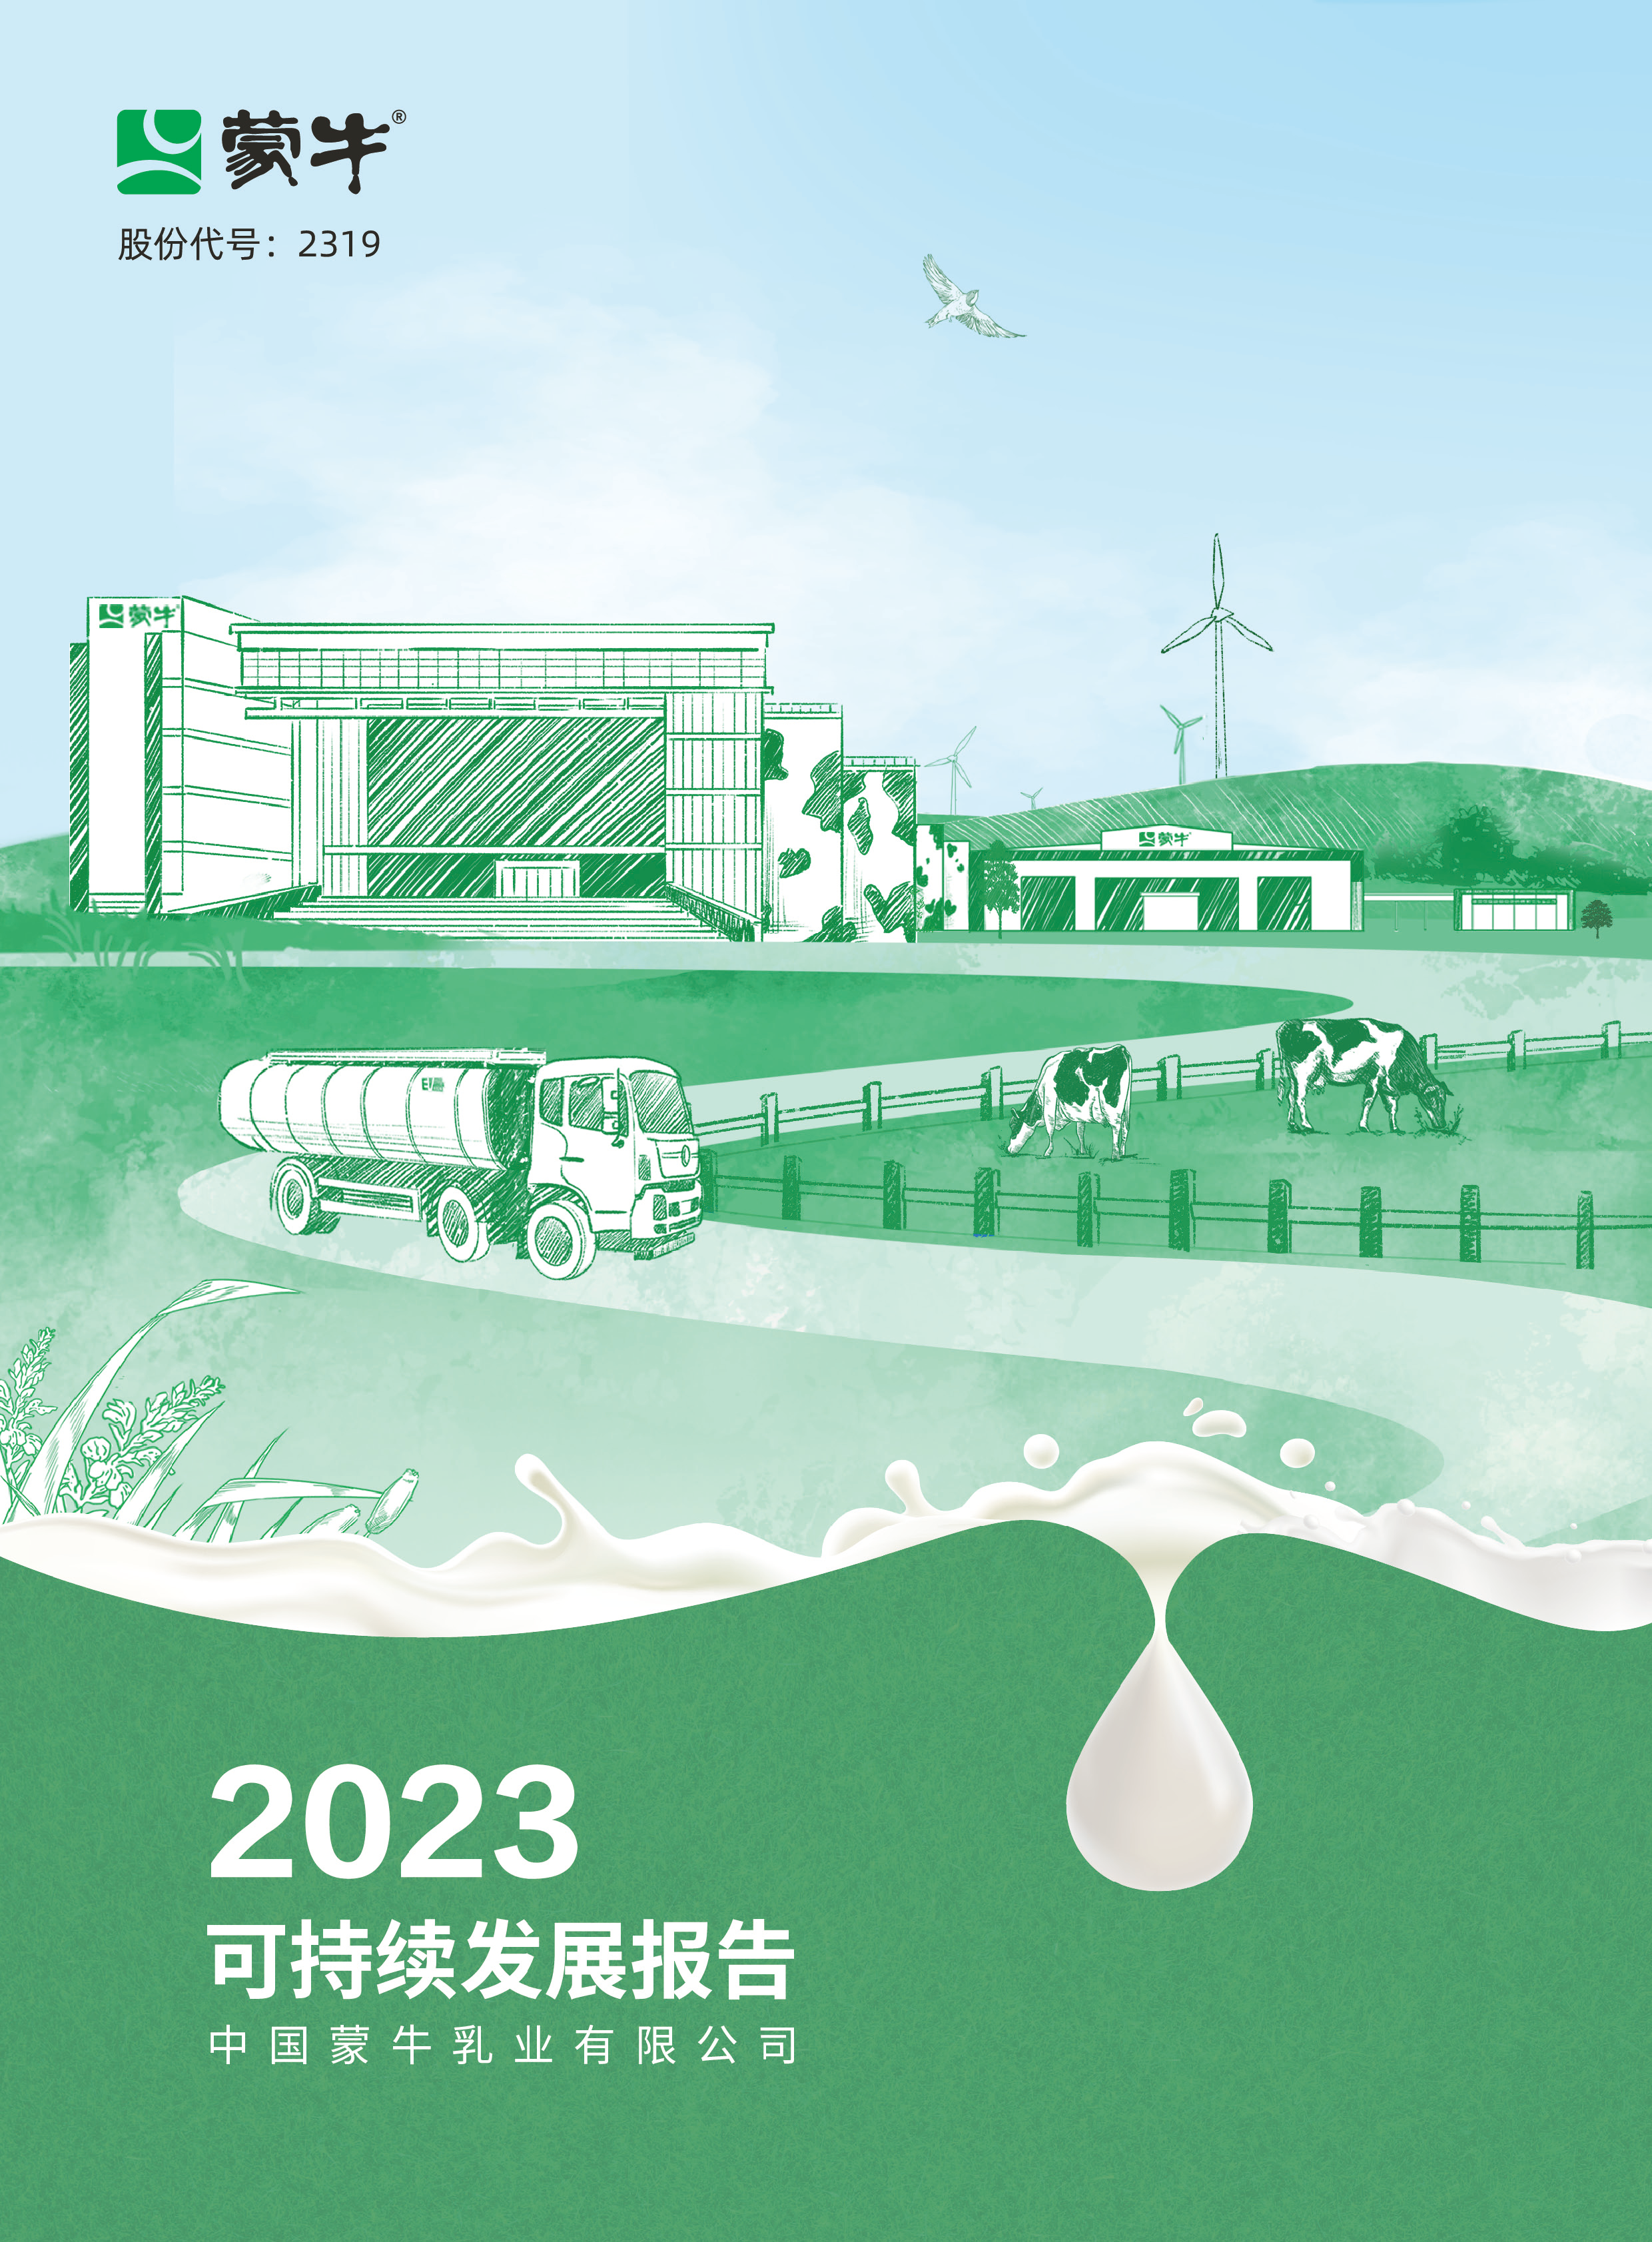 蒙牛发布2023可持续发展报告  推动全产业链“零毁林”